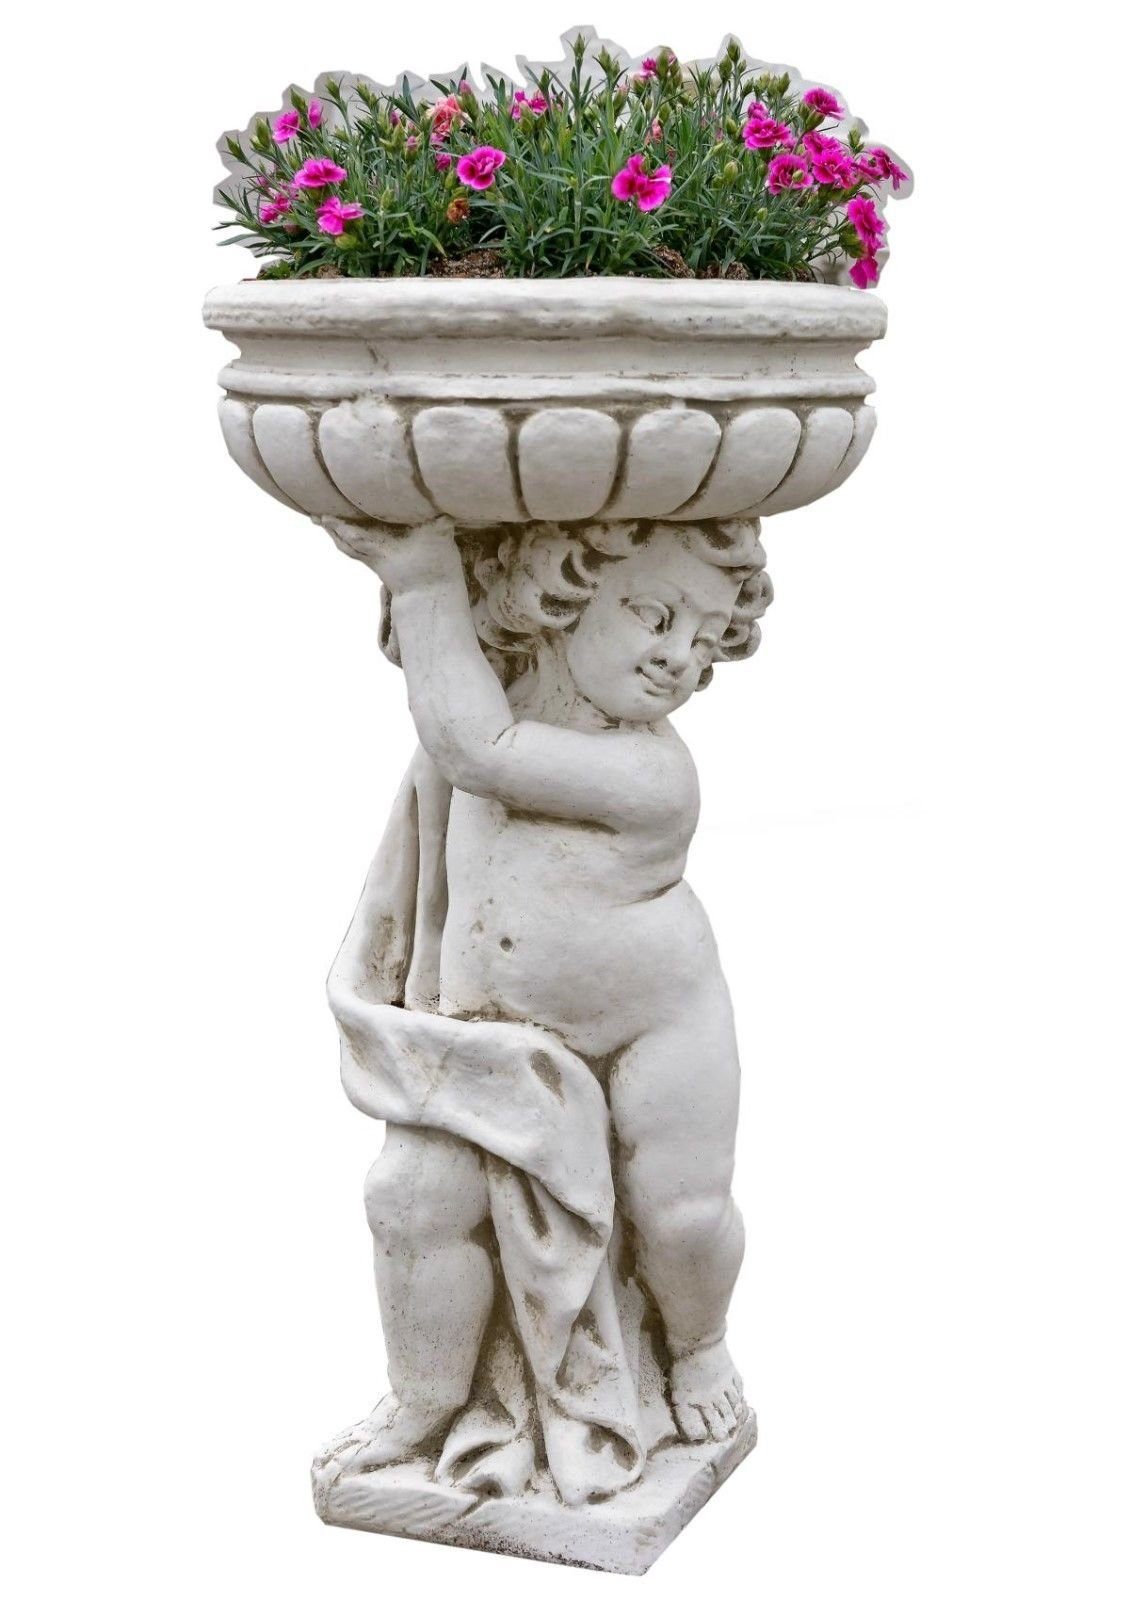 Pflanzkübel Terrassenmöbel Pflanzschale Antikes Blumens Gartenfigur Pflanzschale Blumentopf Wohndesign